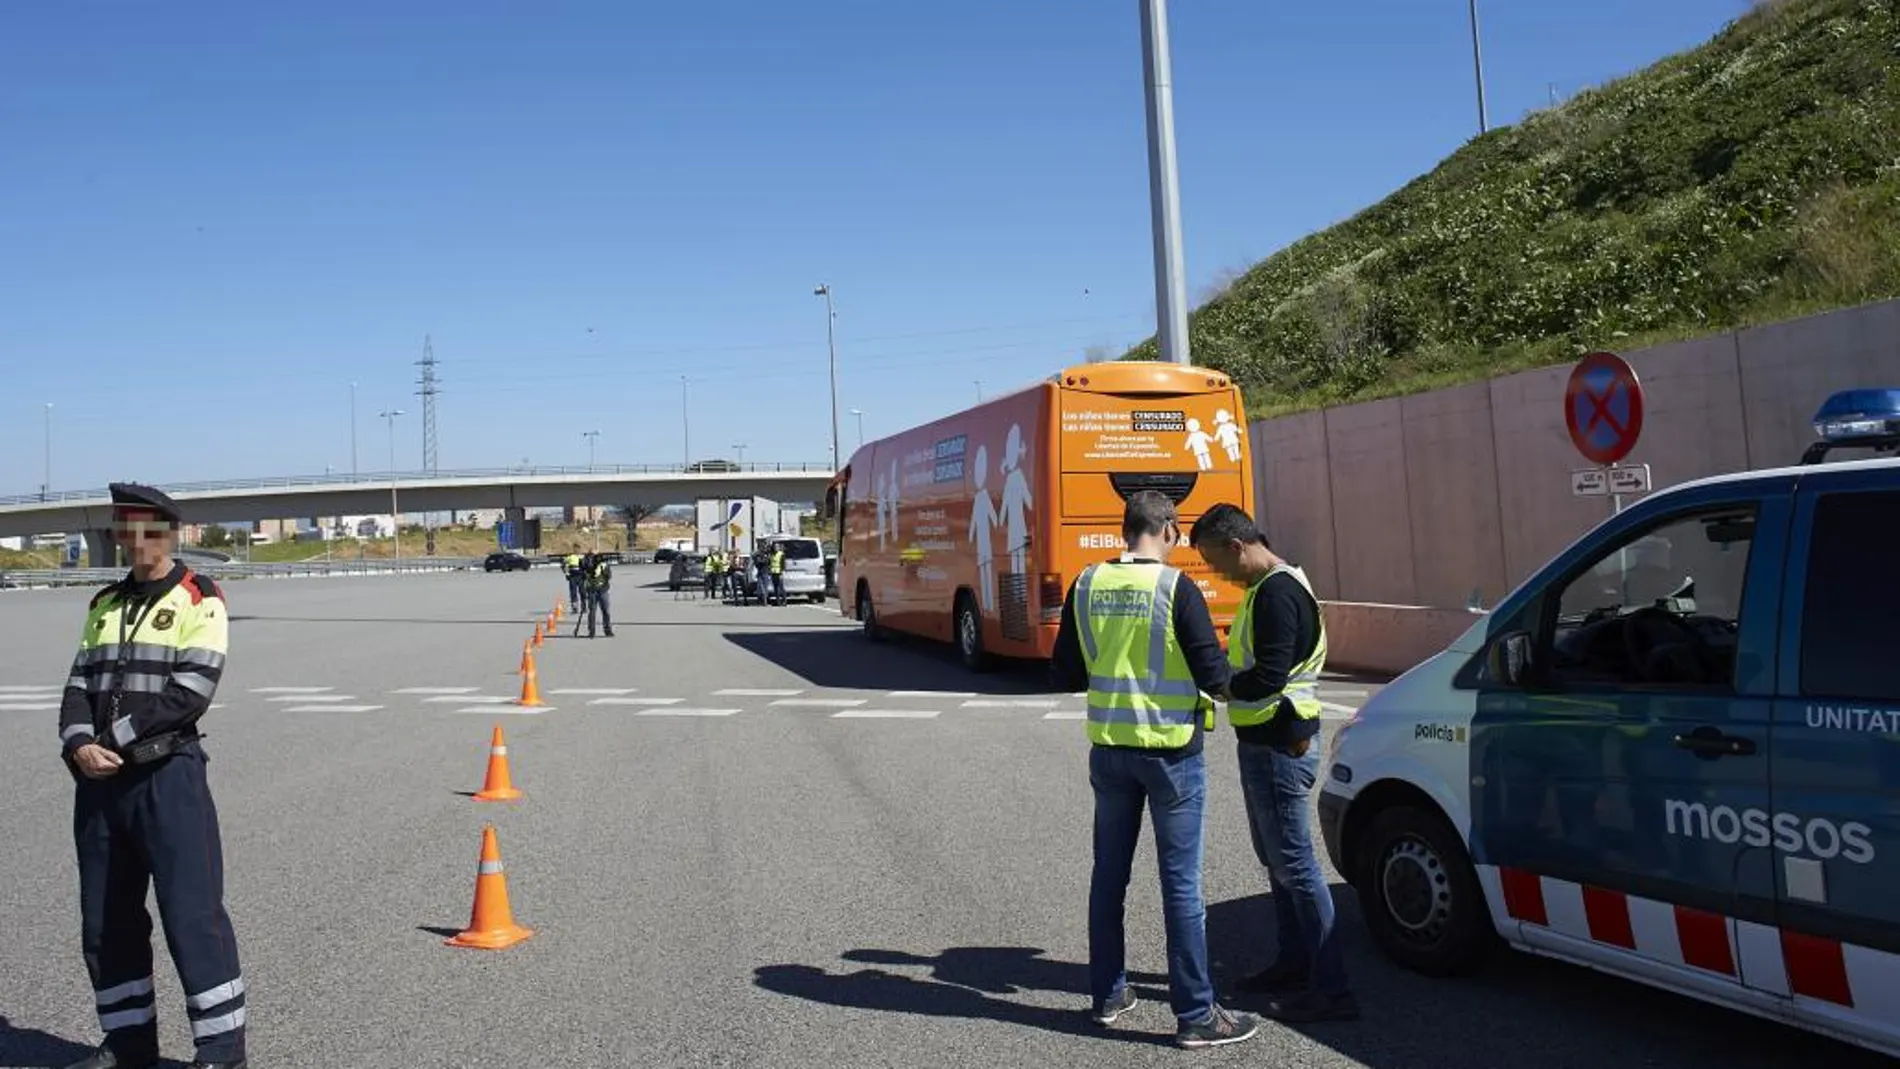 Los Mossos d'Esquadra han inmovilizado en Martorell el autobús transfóbico de la plataforma ultracatólica Hazte Oír